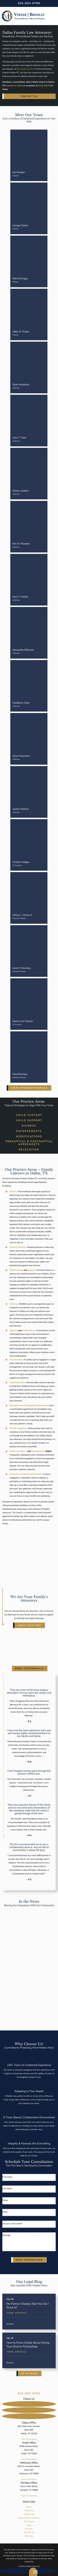 VernerBrumleyMcCurley - Dallas TX Lawyers